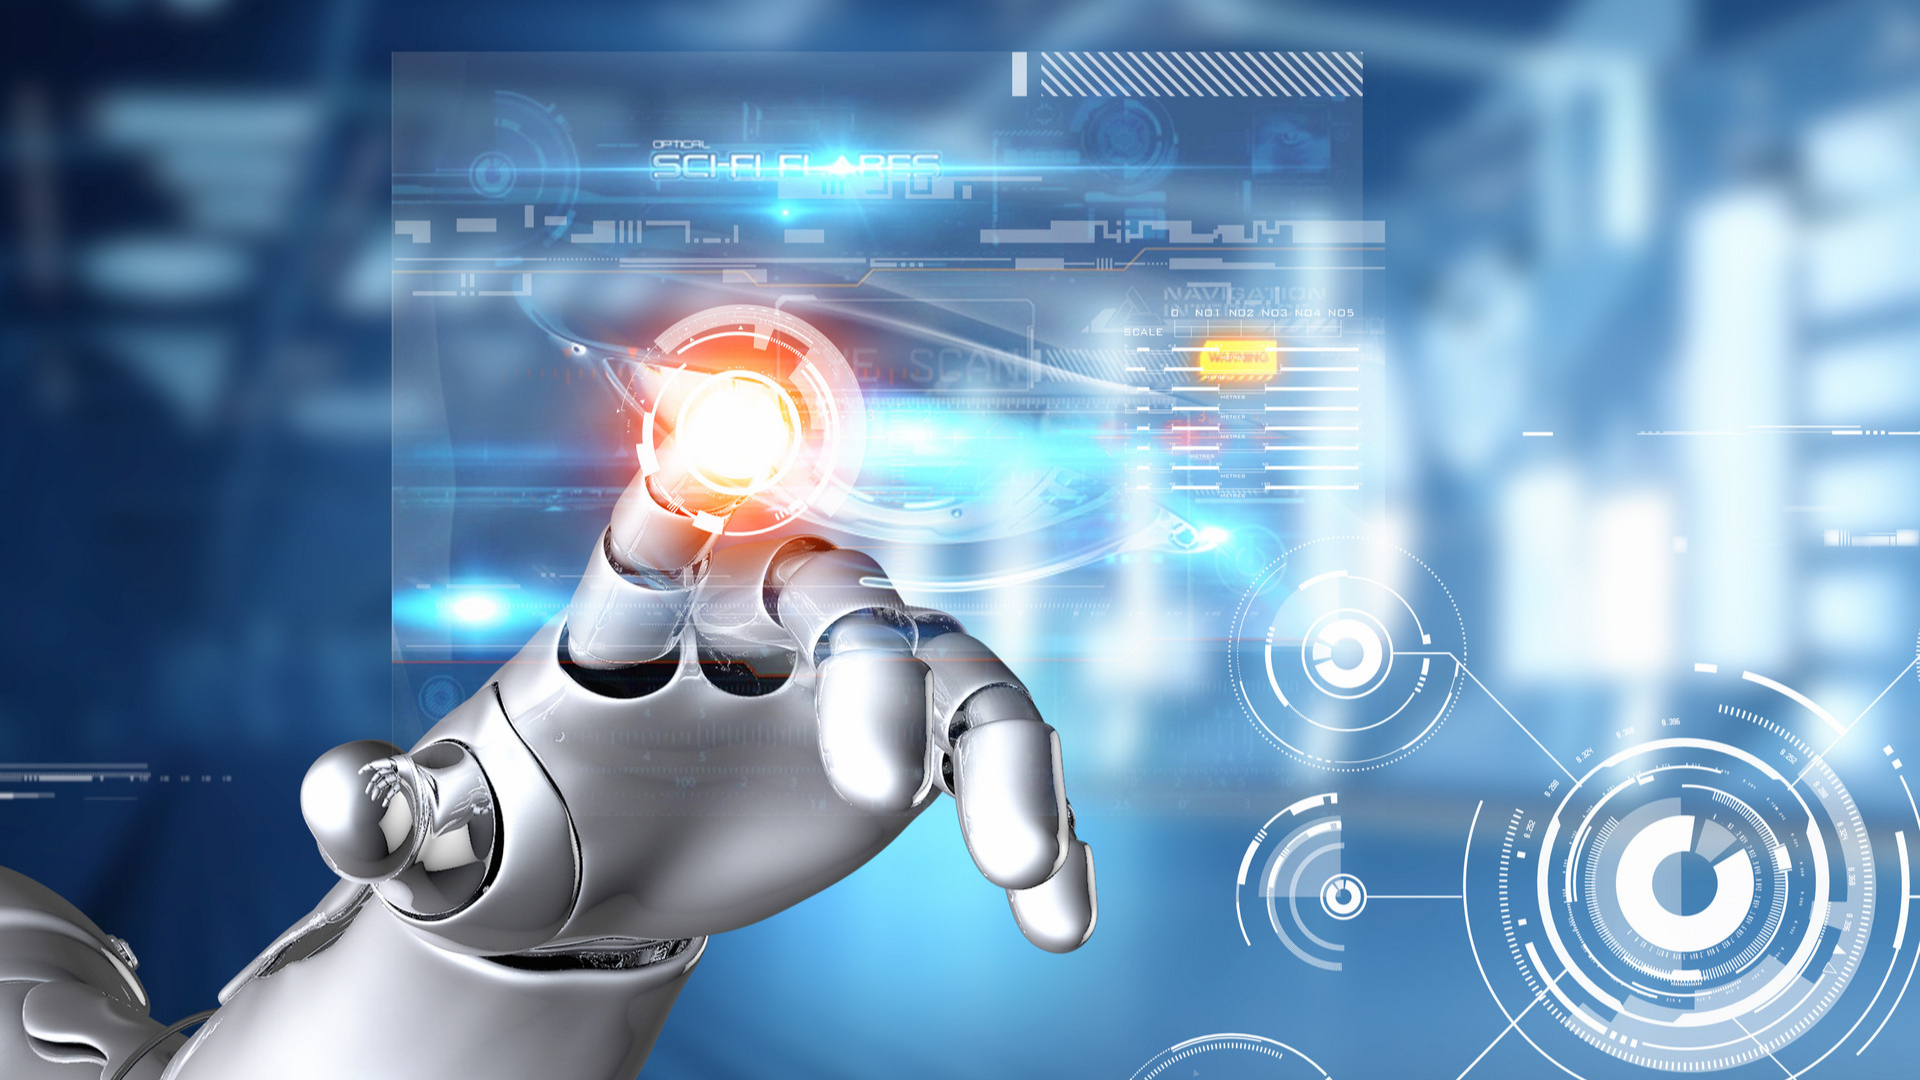 北京发布“人工智能+”行动提升发展含“智”量